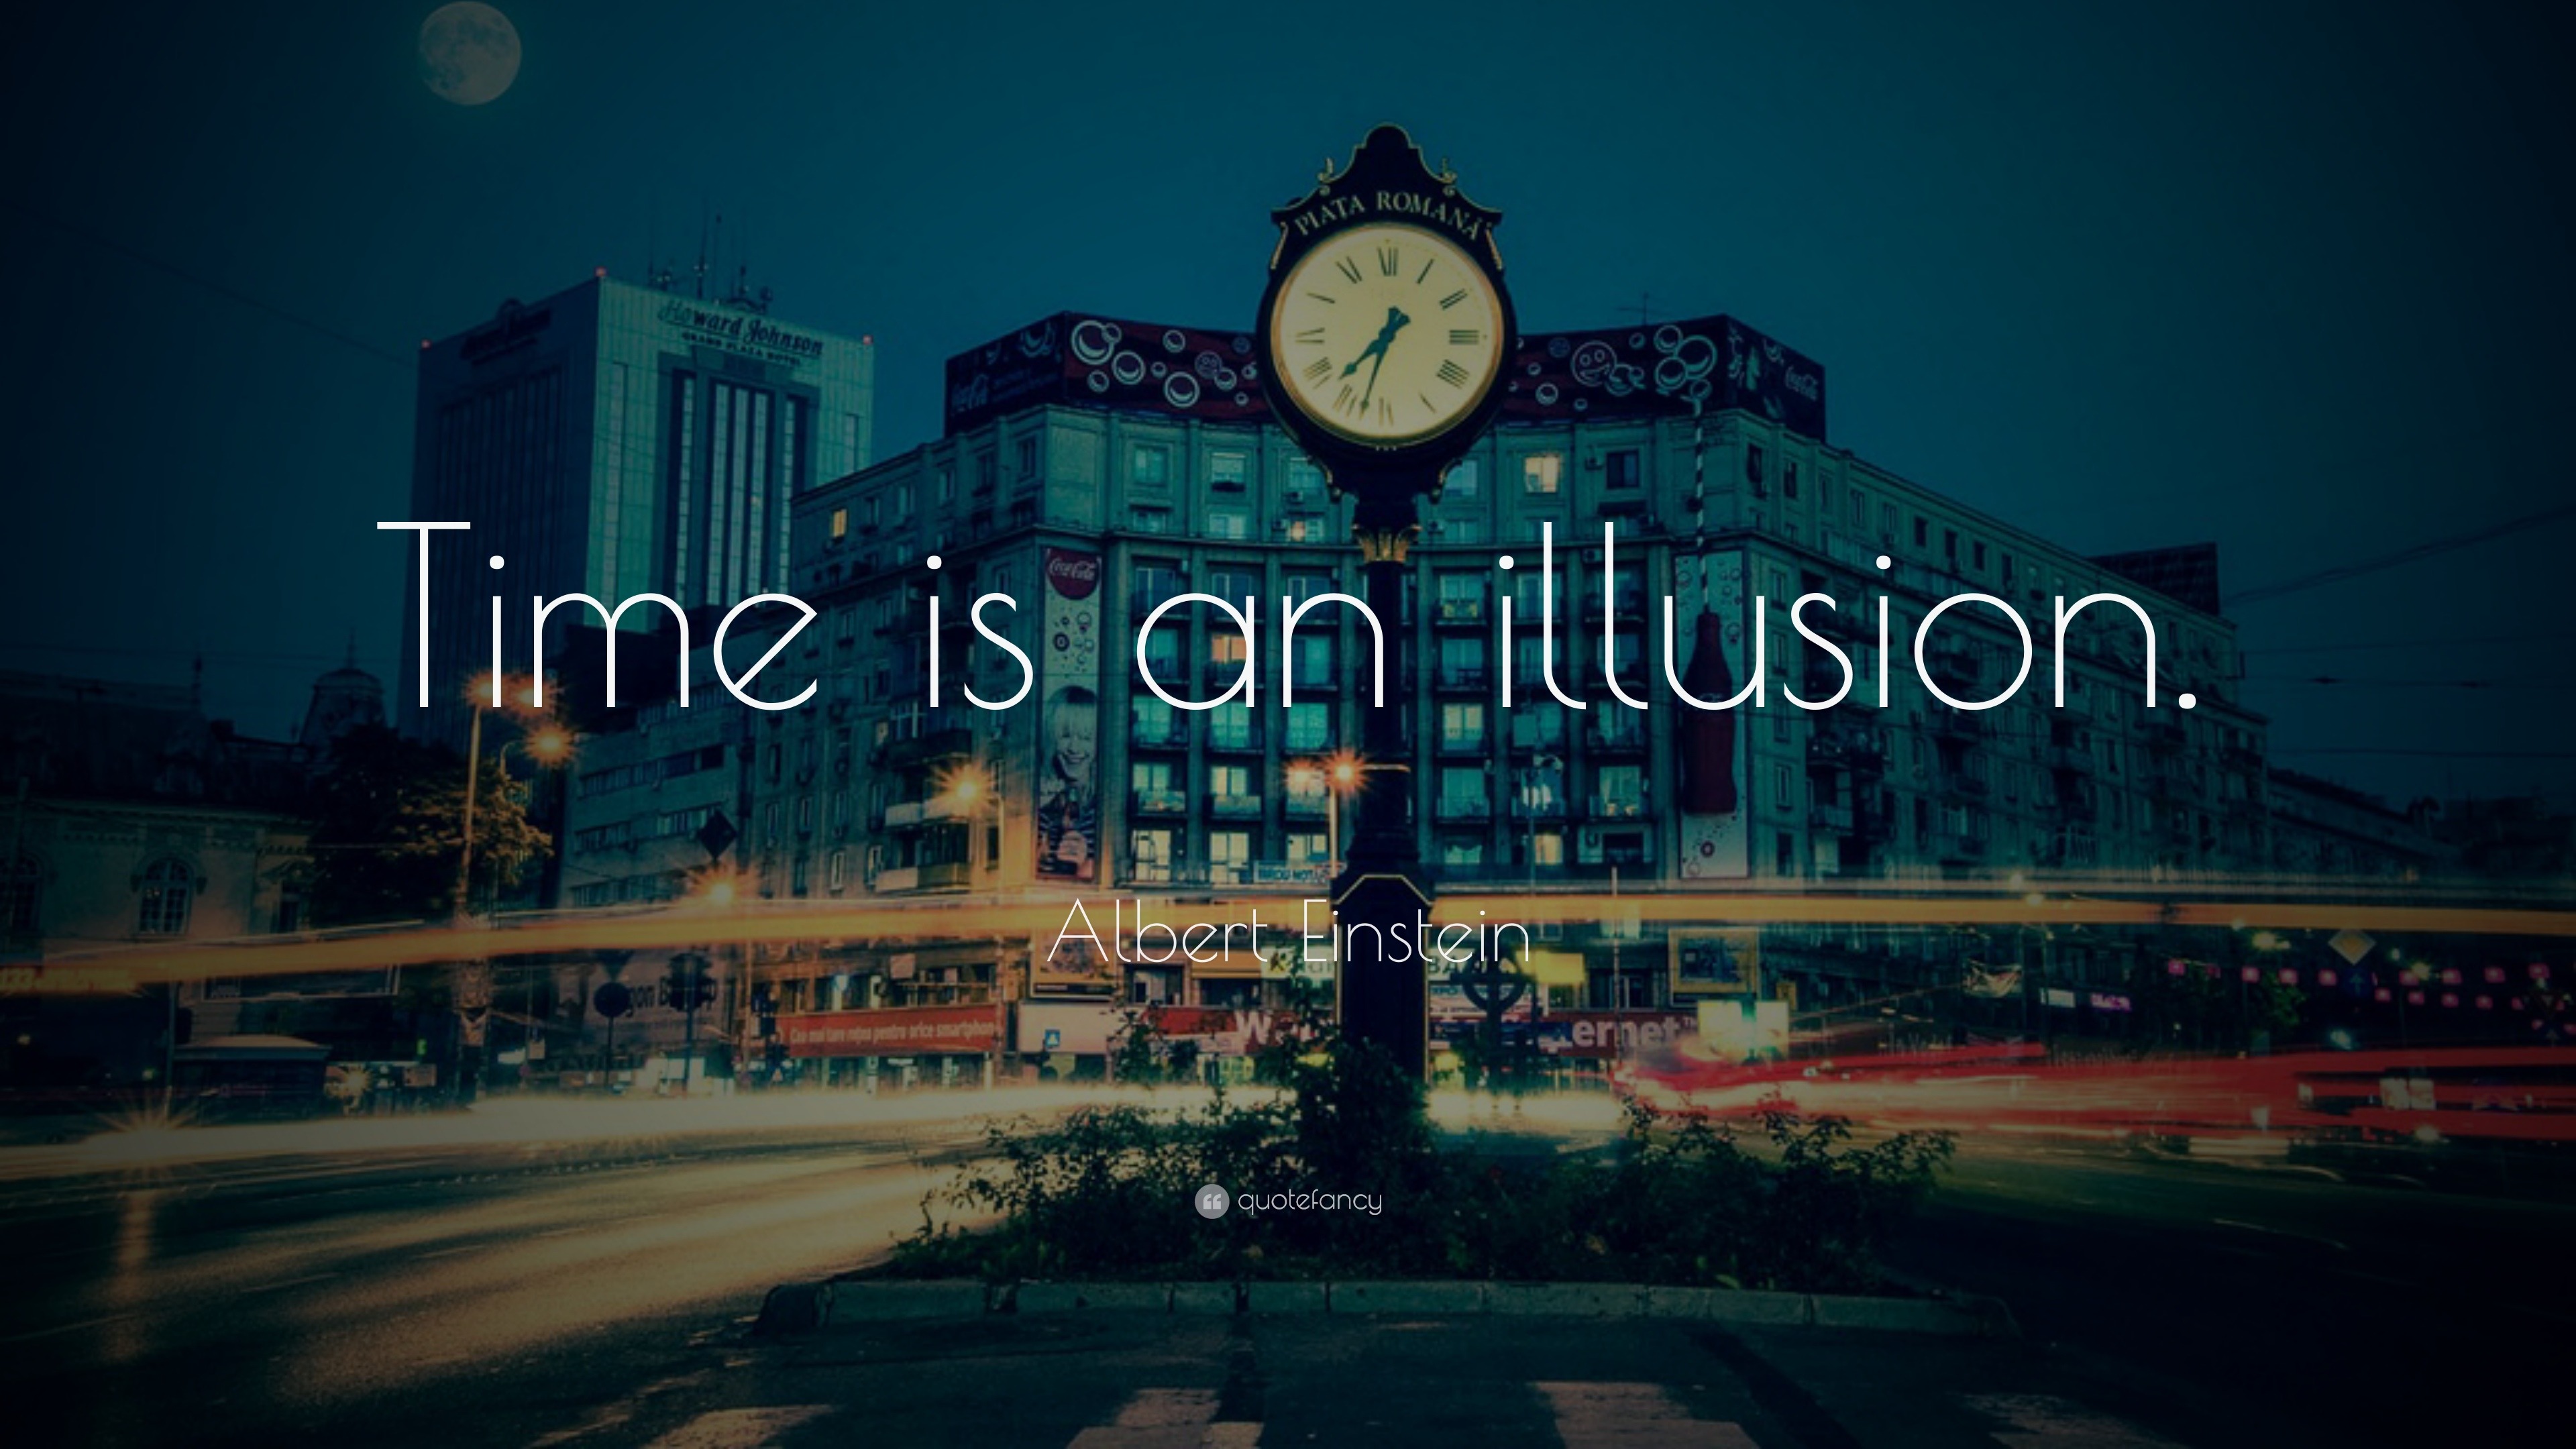 Albert Einstein Quote “Time is an illusion.” (28